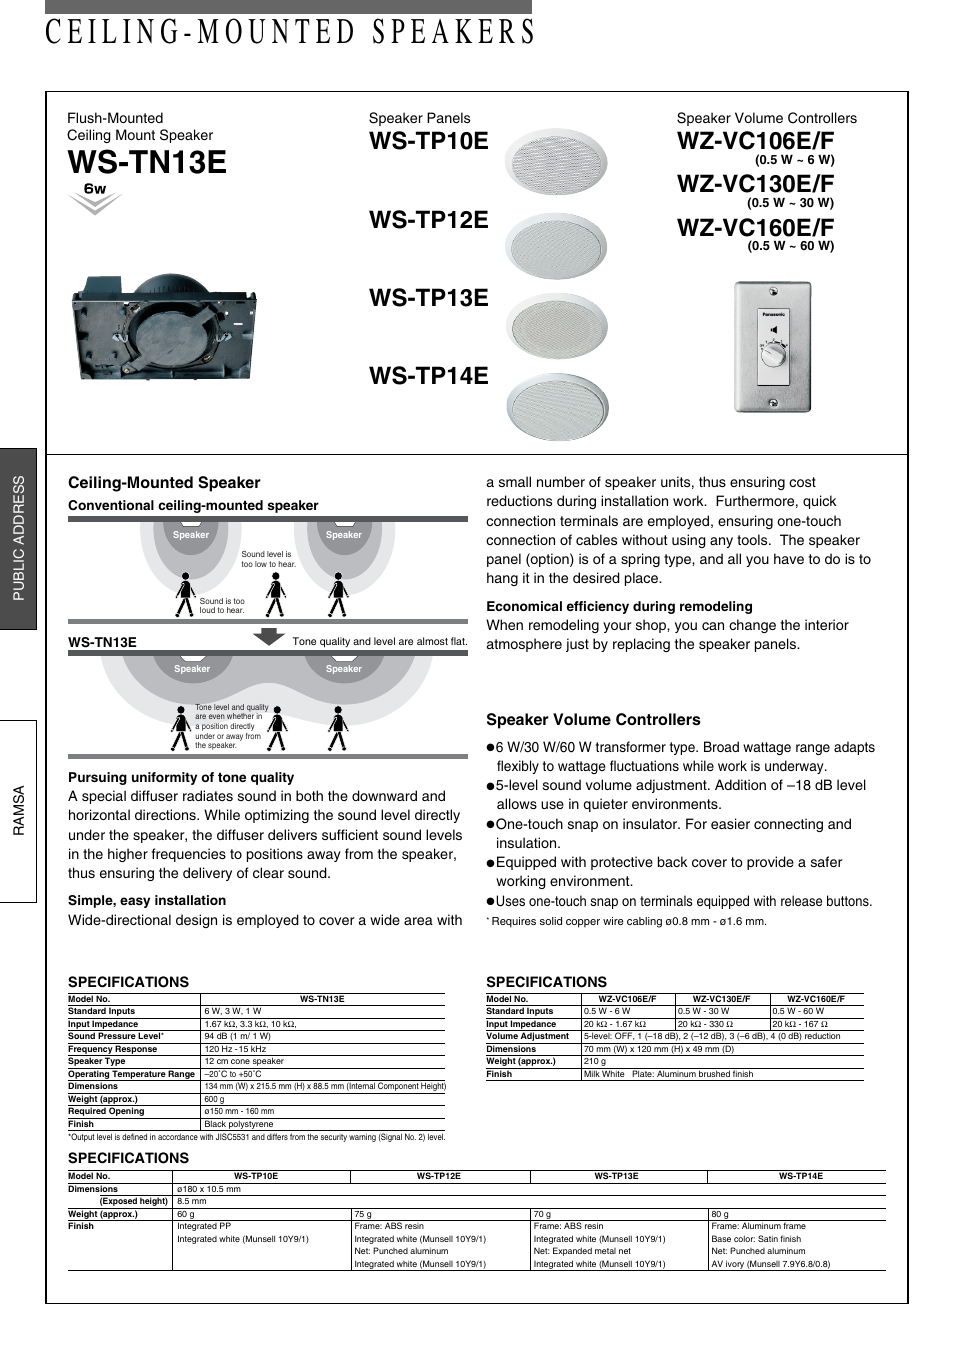 Panasonic WZ-VC130E/F User Manual | 1 page